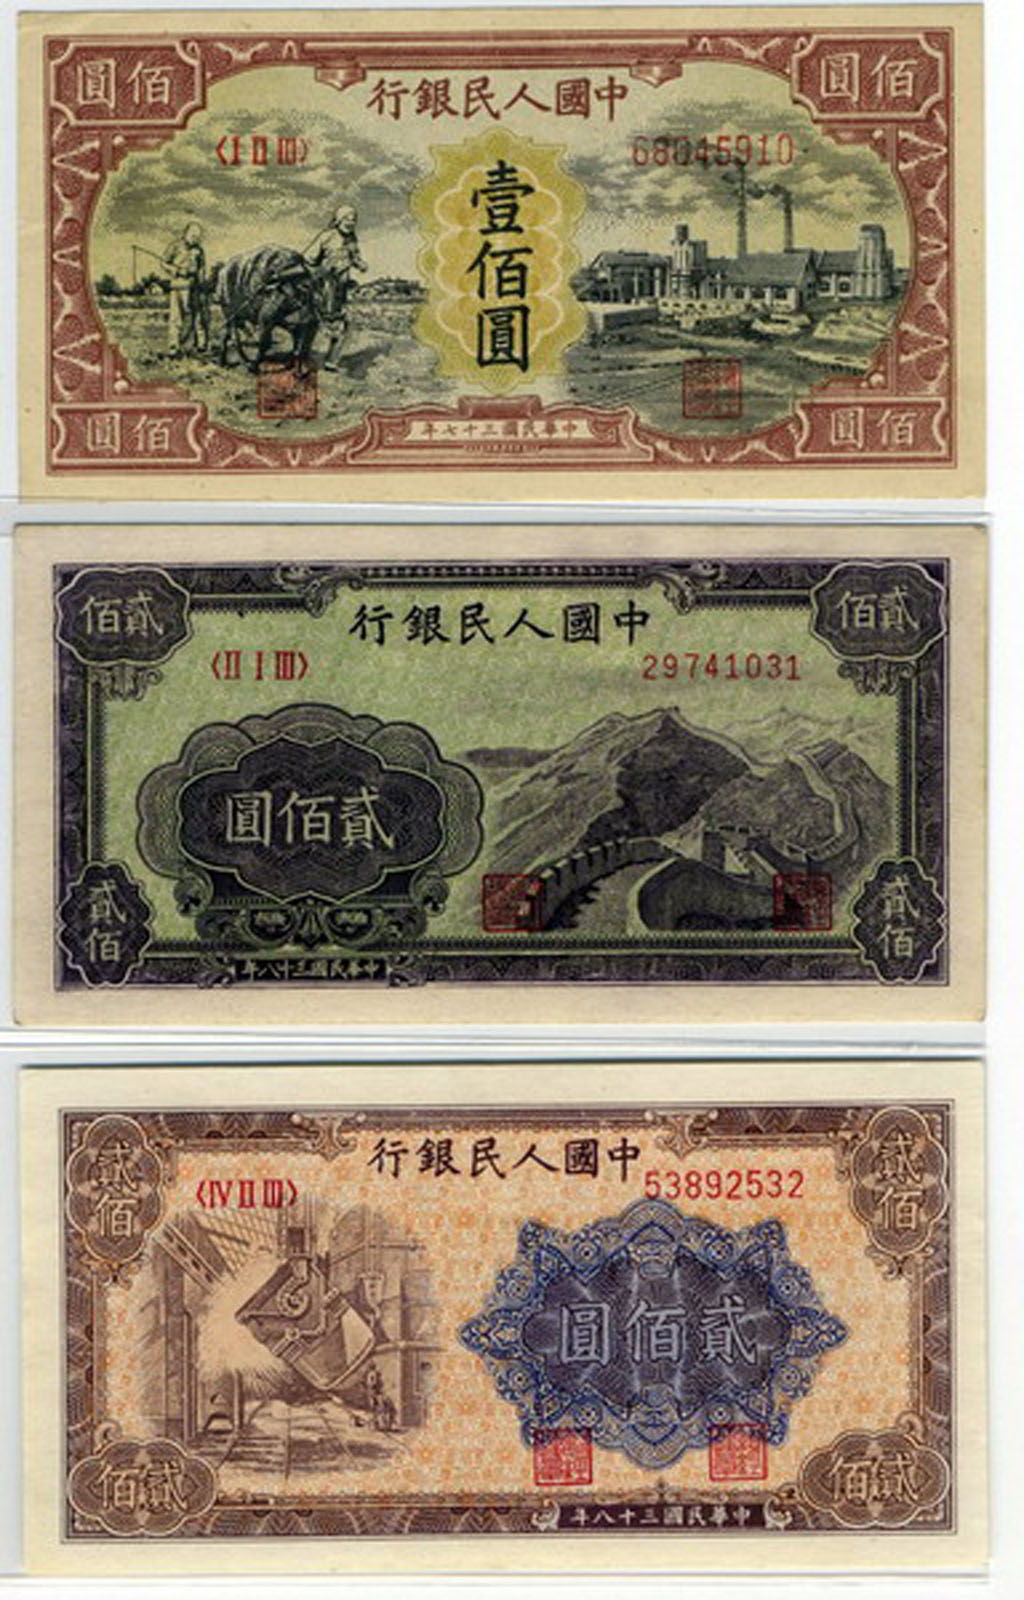 1949年第一版人民币壹佰圆耕地与工厂、贰佰圆炼钢、贰佰圆长城各一枚